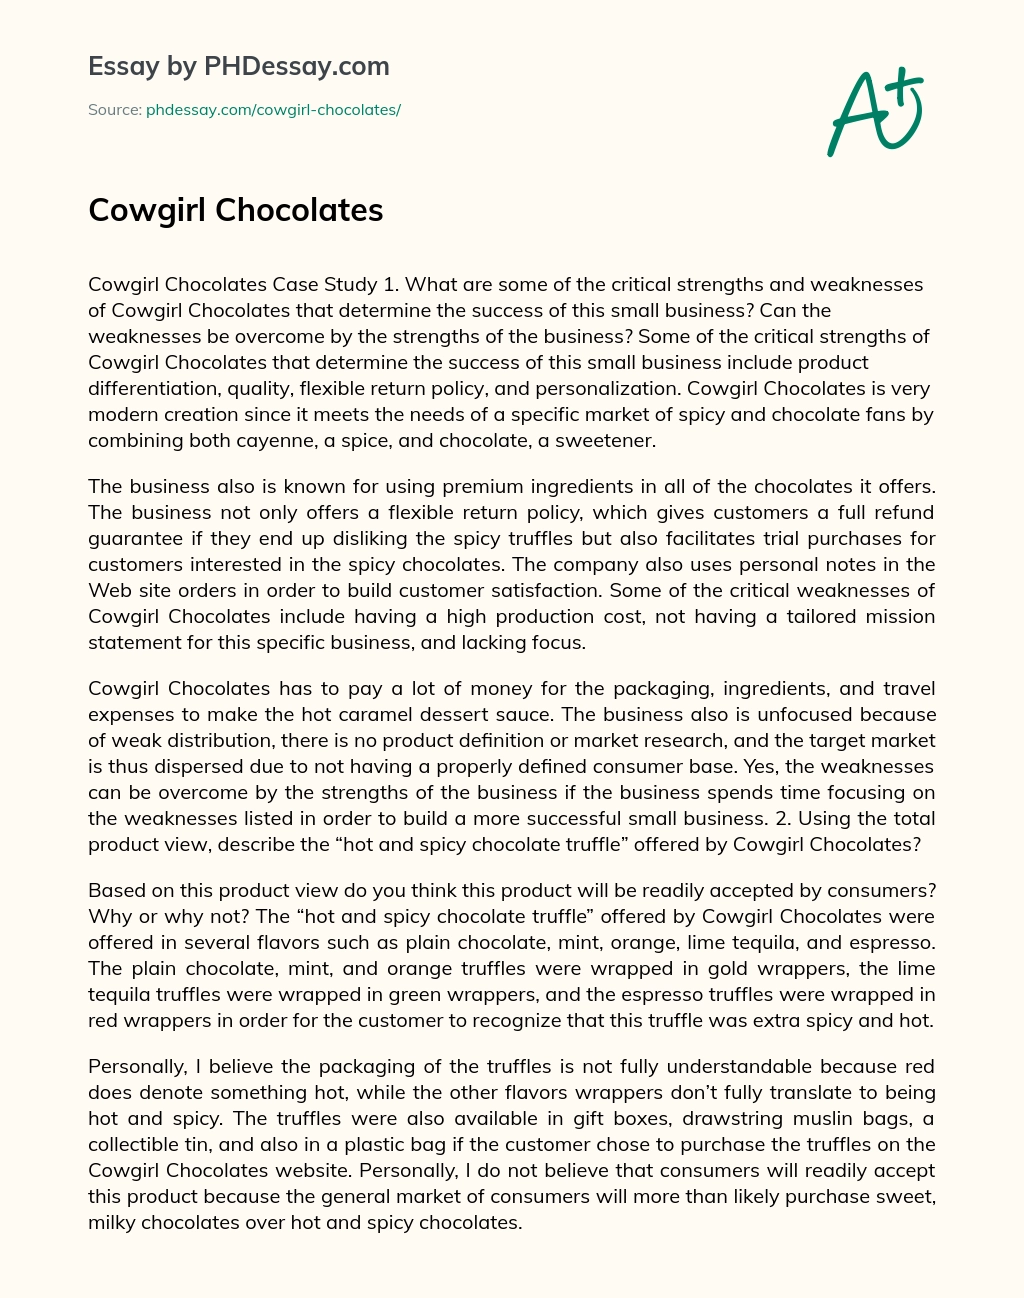 Cowgirl Chocolates essay